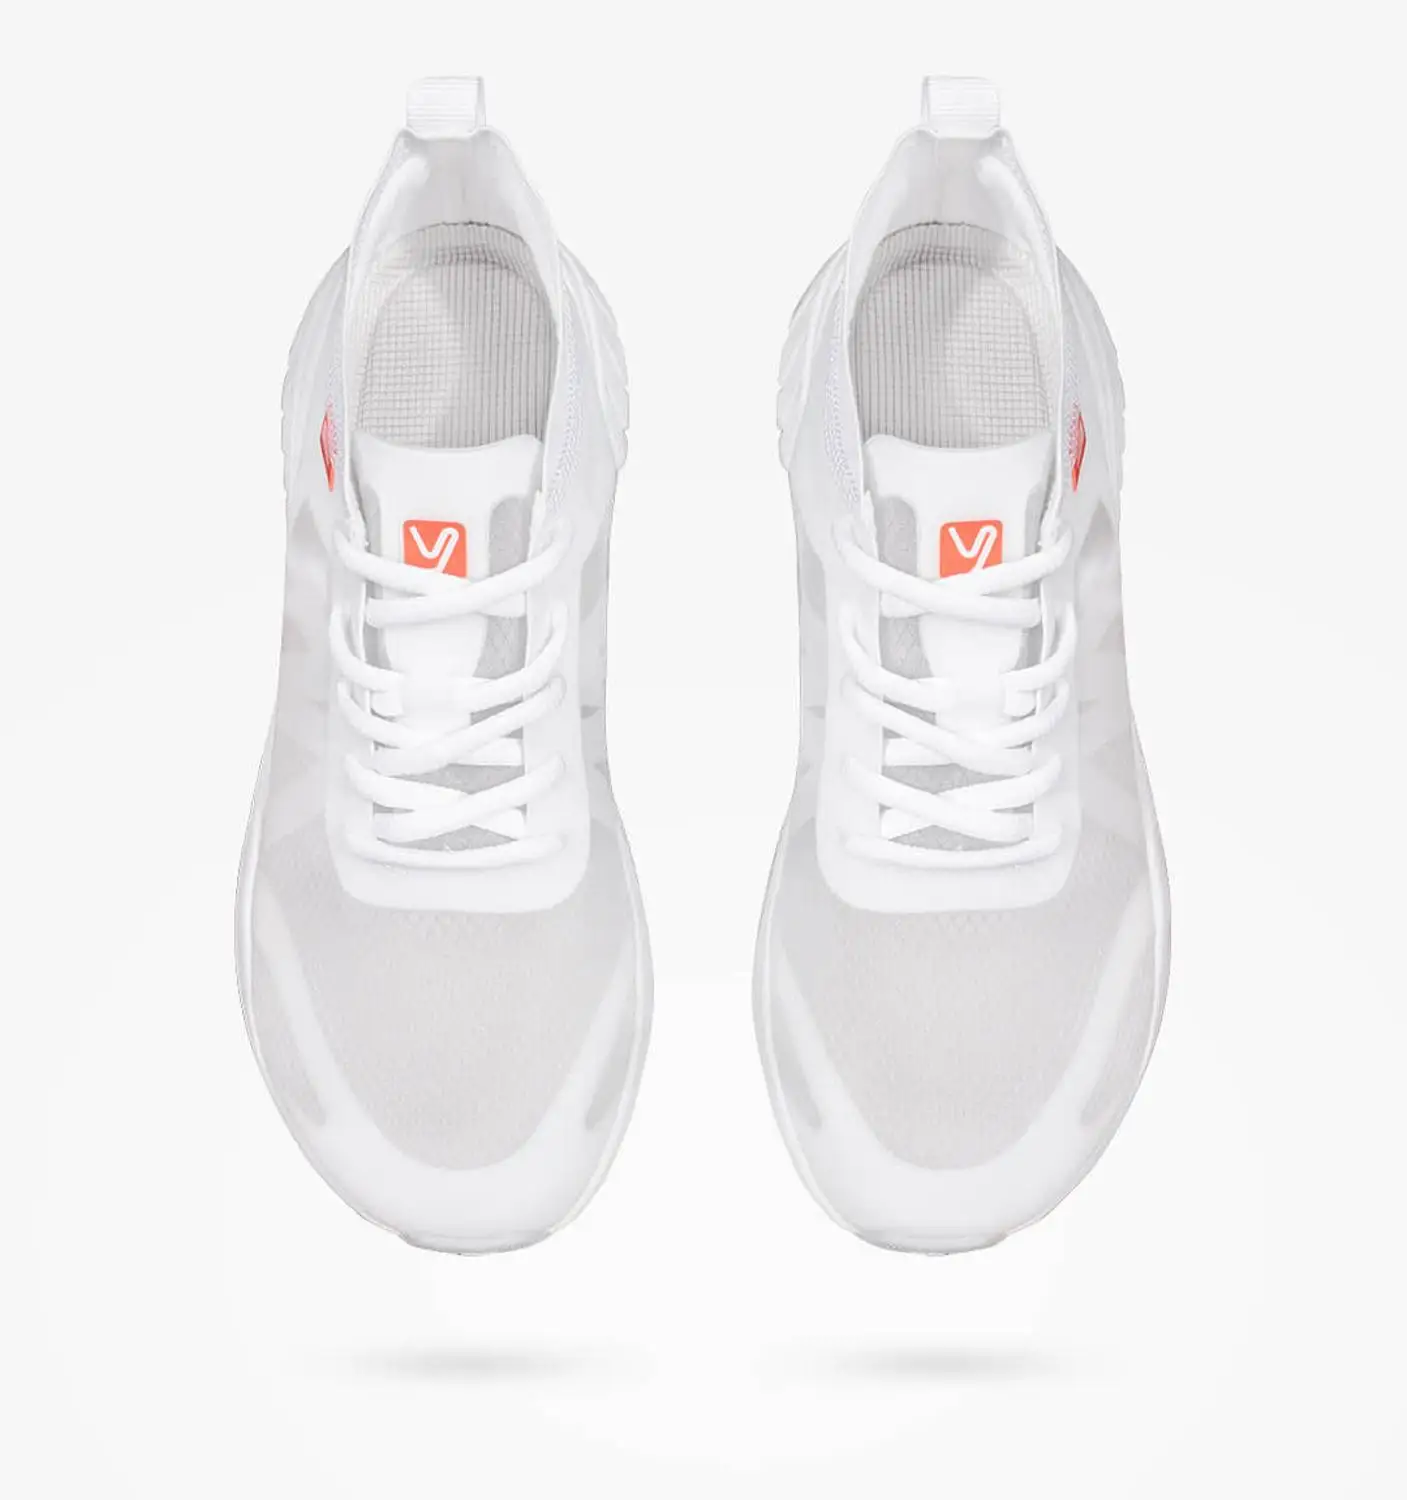 Xiaomi YUNCOO Легкая спортивная обувь из прозрачной моно пряжи легкая и быстросохнущая Мужская и женская дышащая повседневная обувь - Цвет: white 42